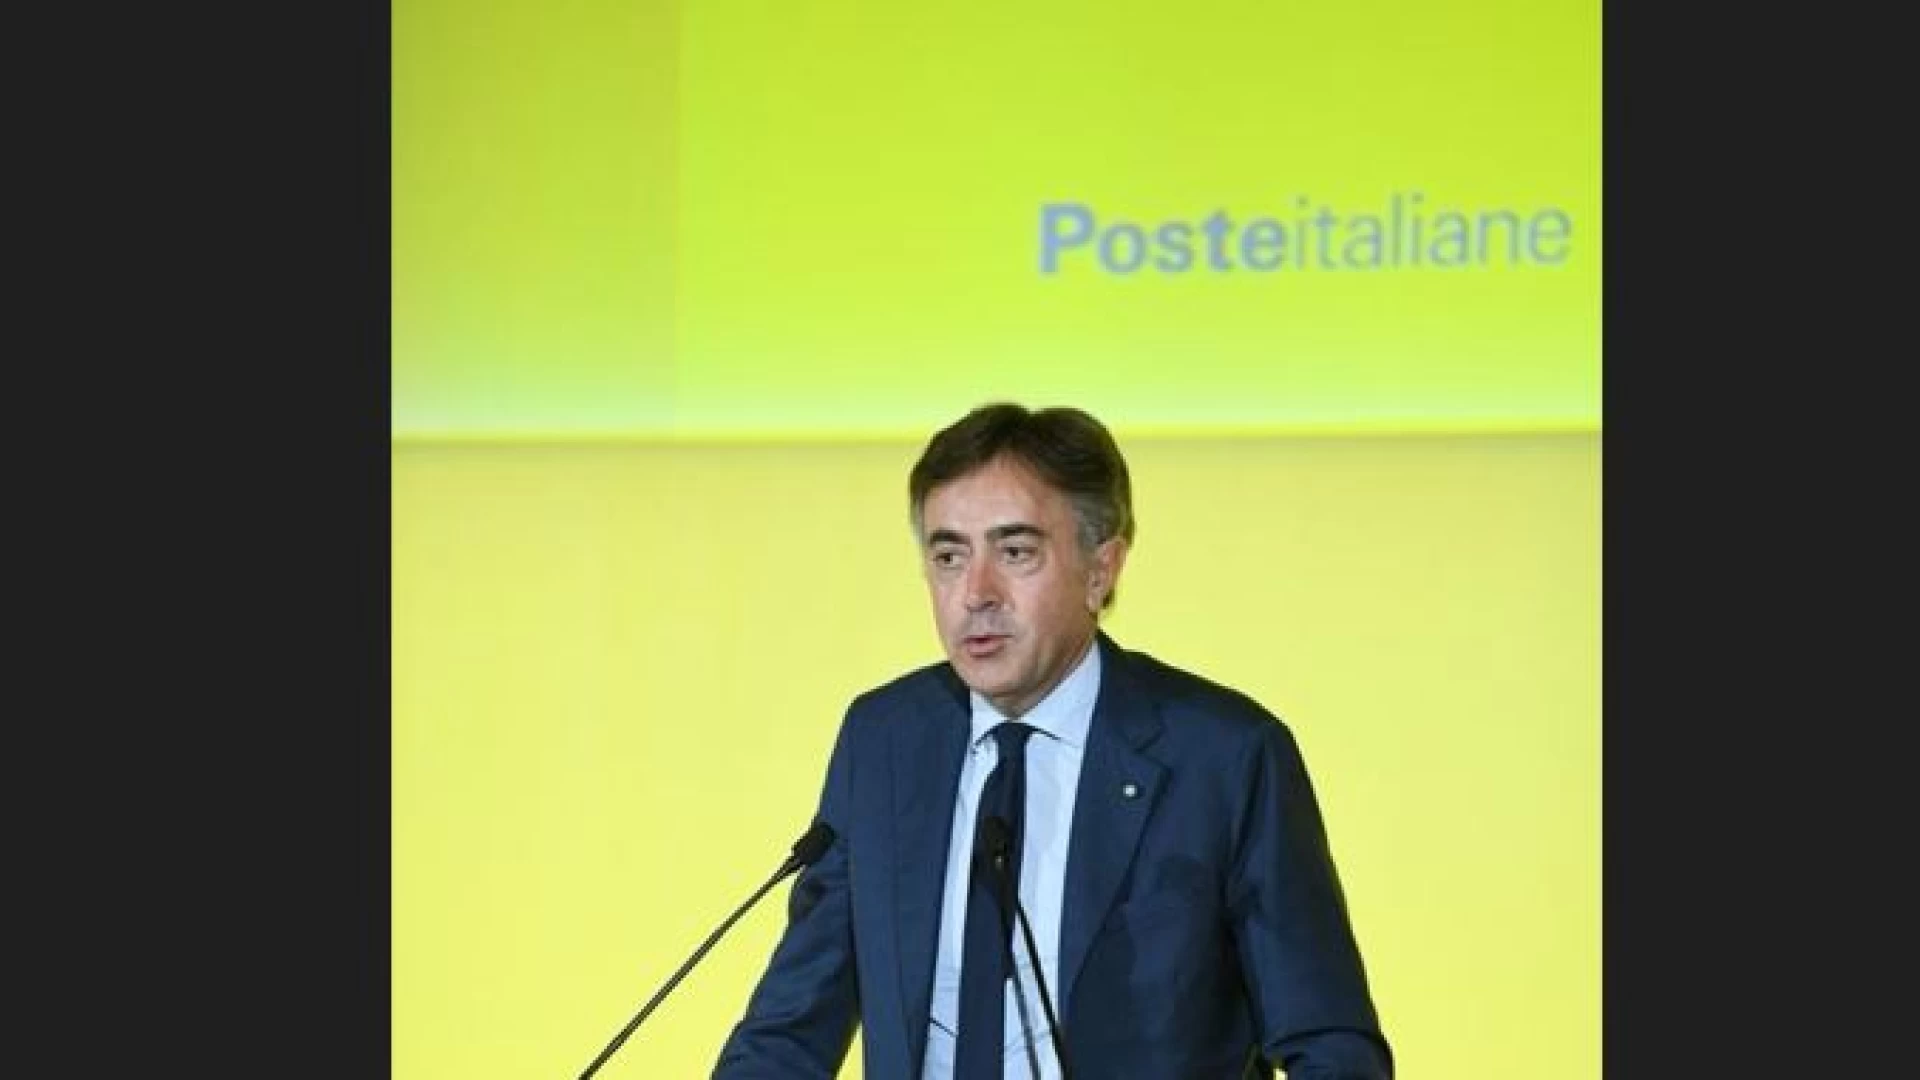 A partire da luglio sarà possibile richiedere e rinnovare i passaporti in tutti gli uffici Postali d'Italia.